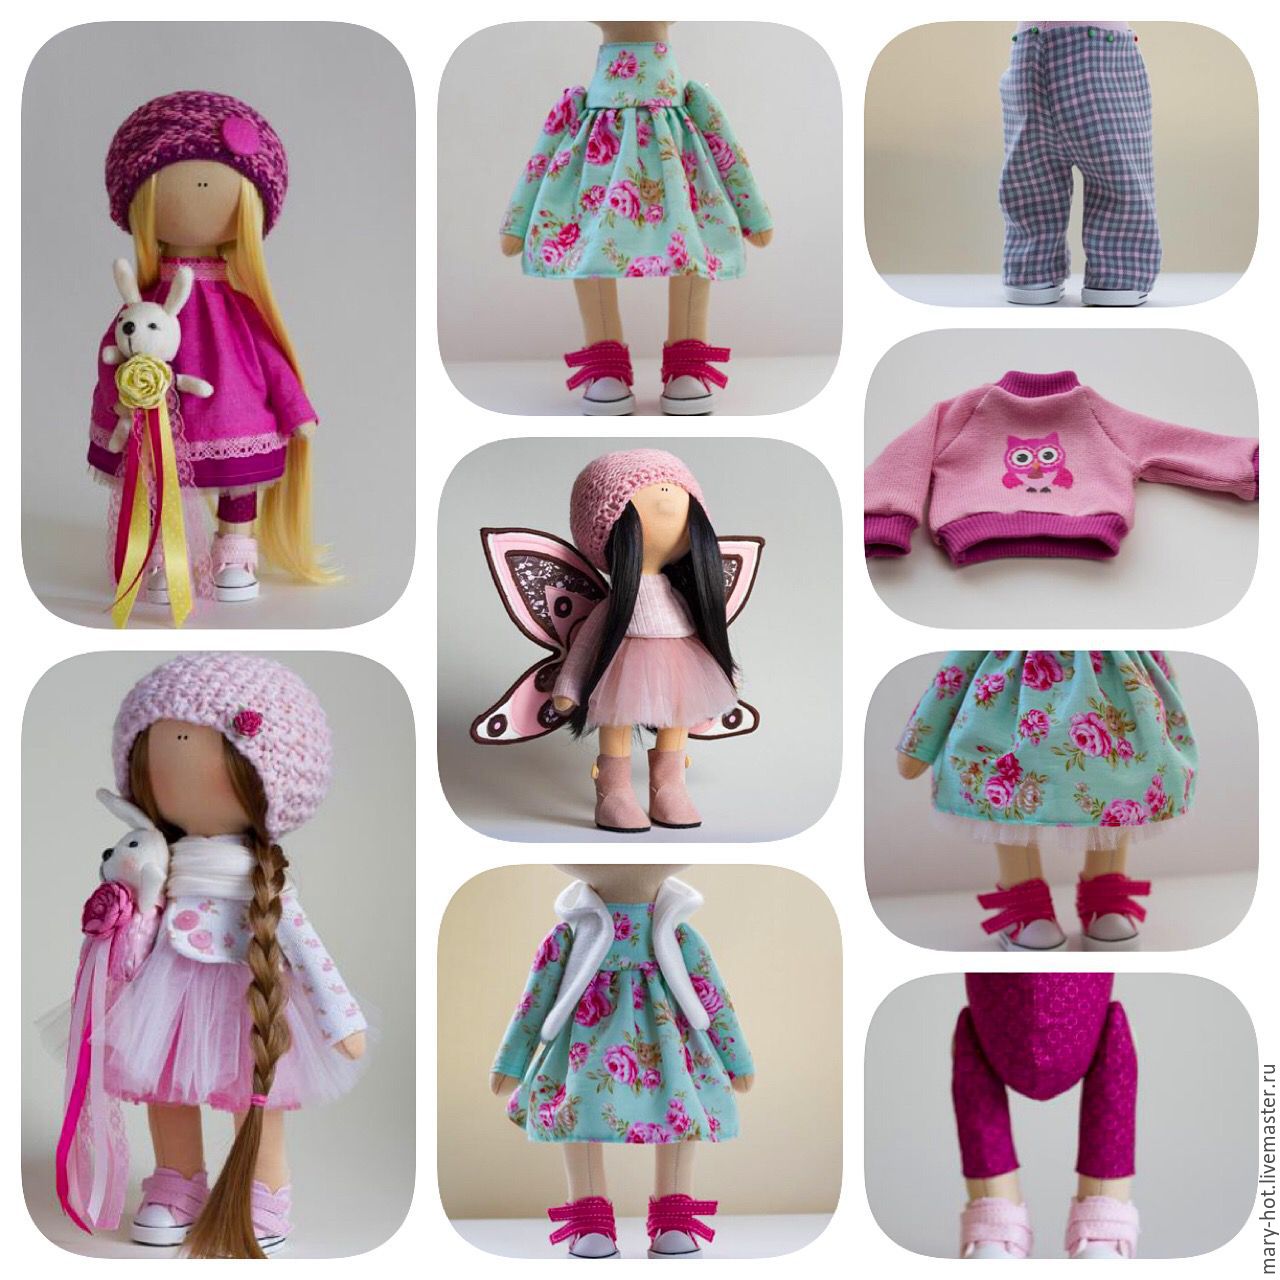 Вещи своими руками для кукол фото: изготовление одежды и аксессуаров для гардероба